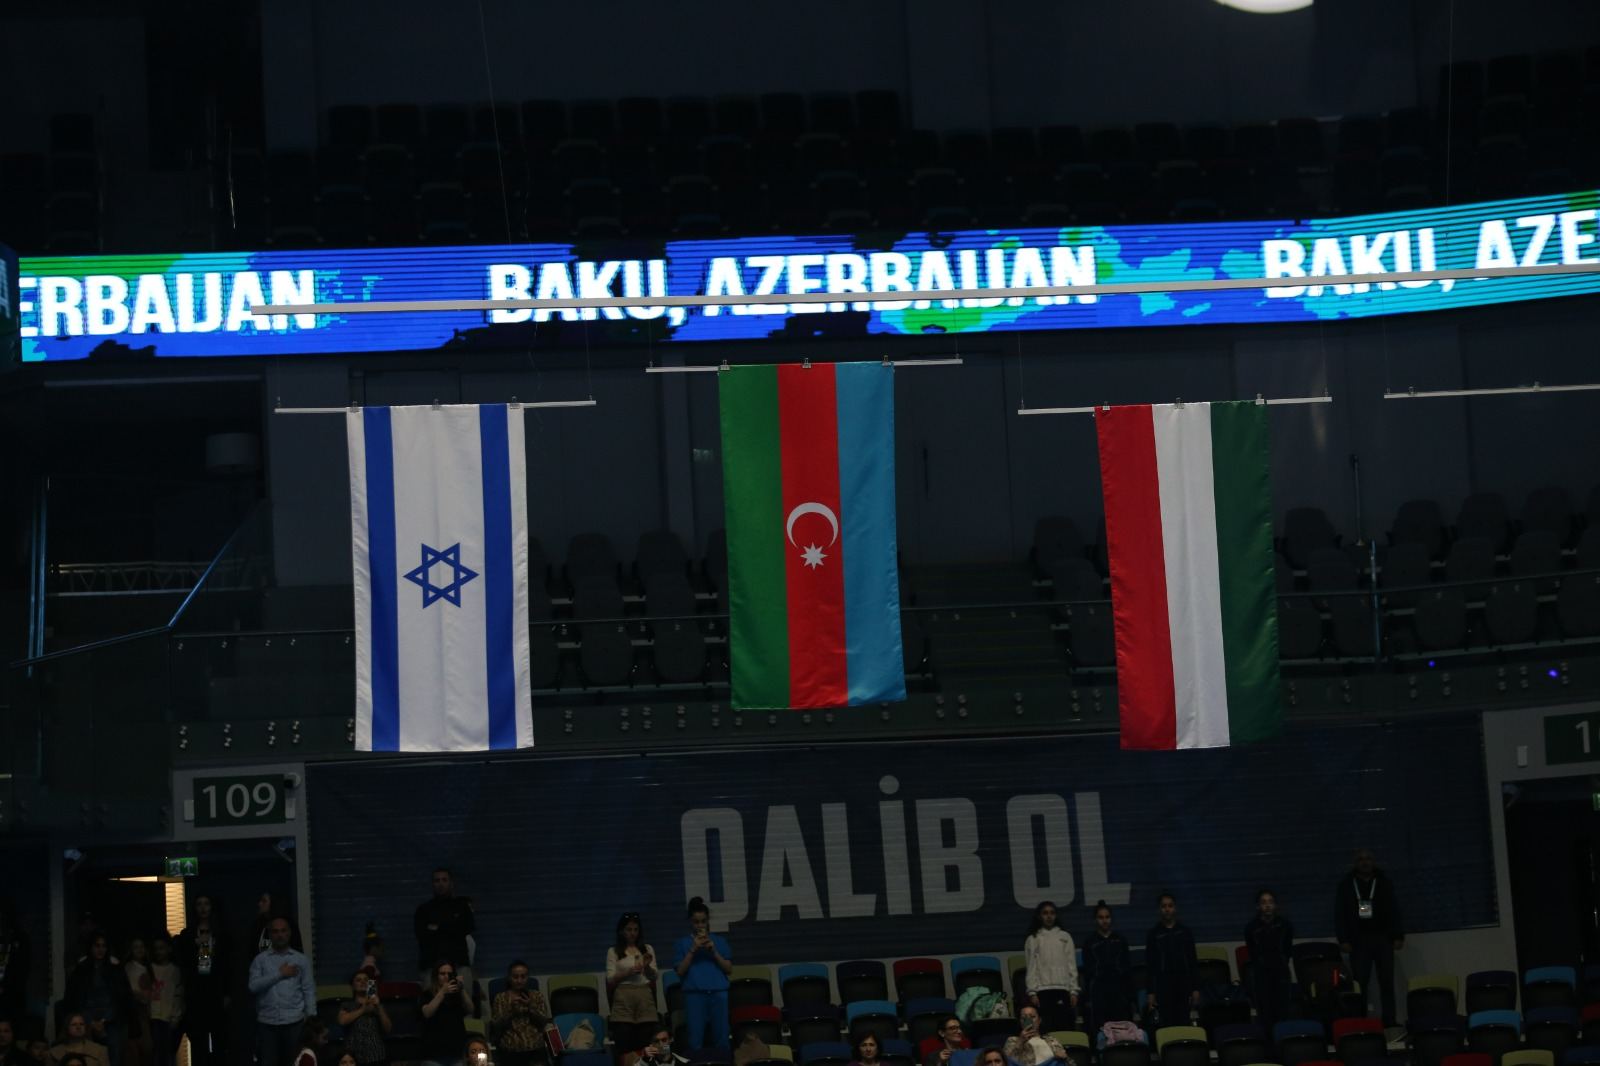 В Баку прошла церемония награждения победителей Международного турнира AGF Trophy (ФОТО)